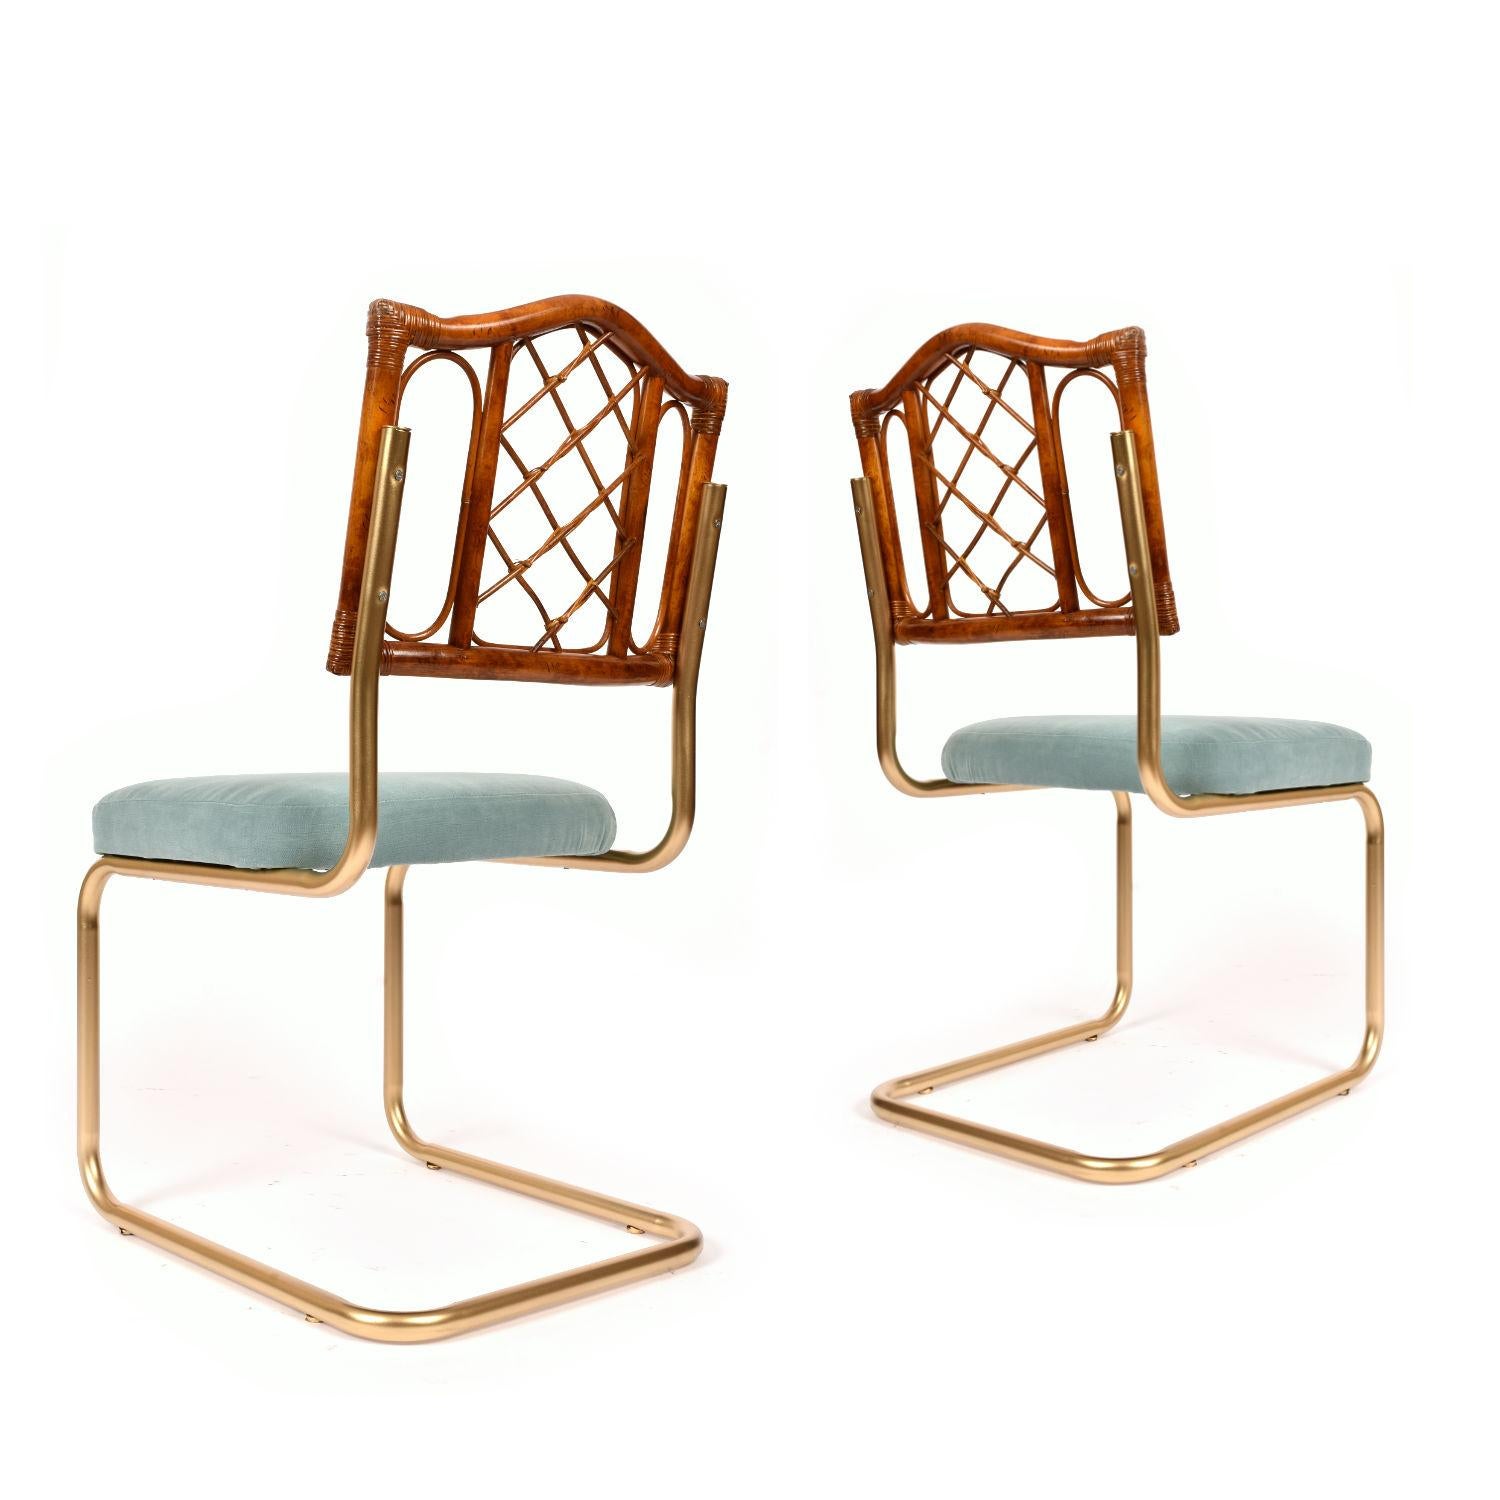 1970s kitchen chairs